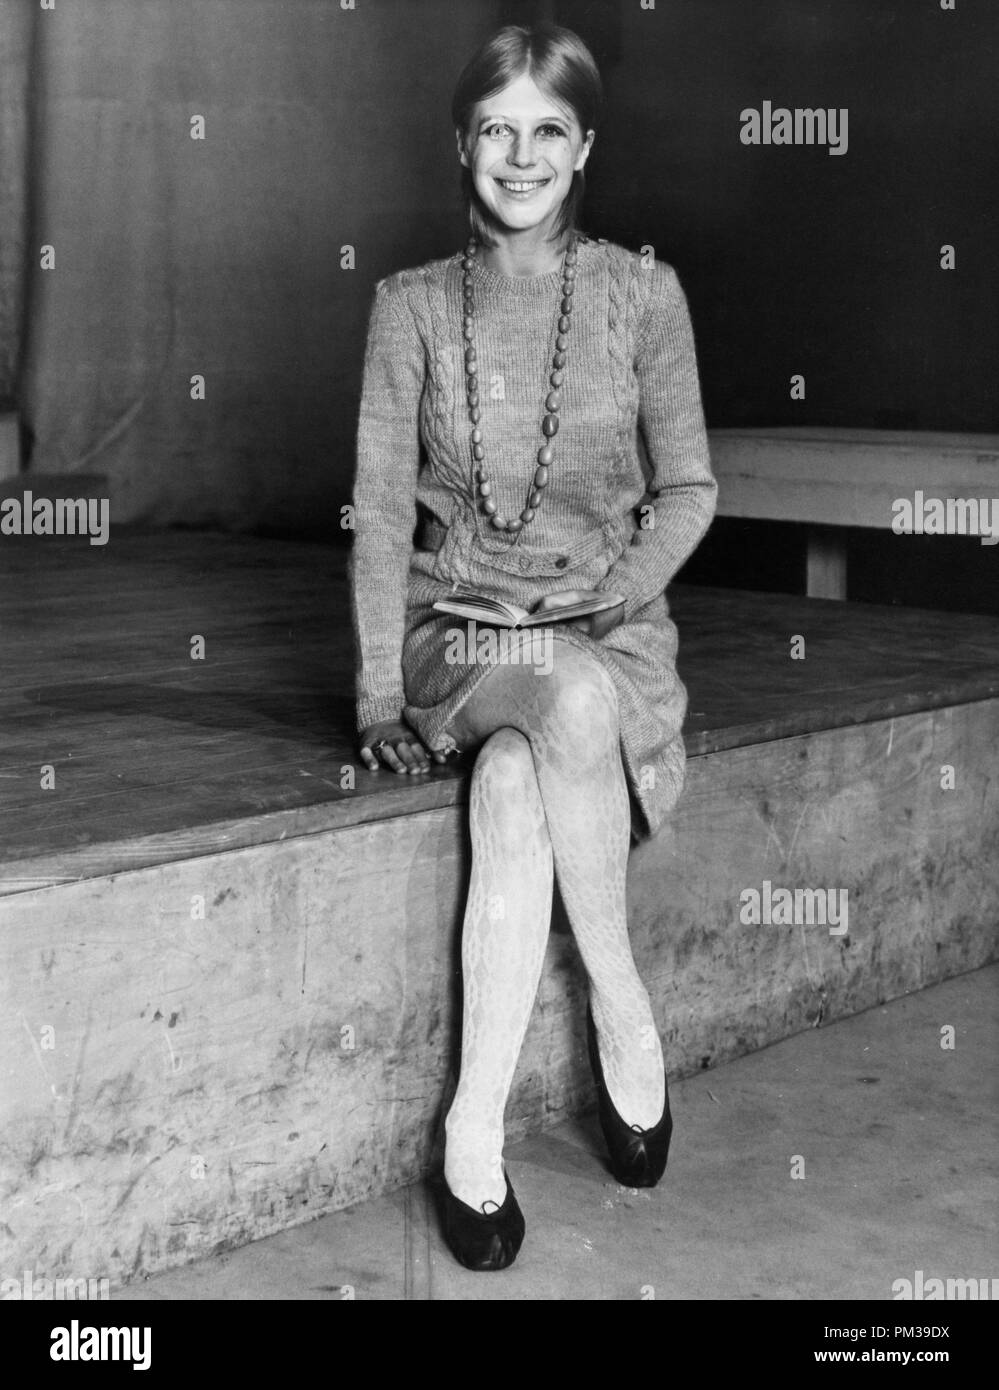 Marianne fidato, 1969 © CCR /Hollywood Archivio - Tutti i diritti riservati Riferimento File # 1295 009 THA Foto Stock